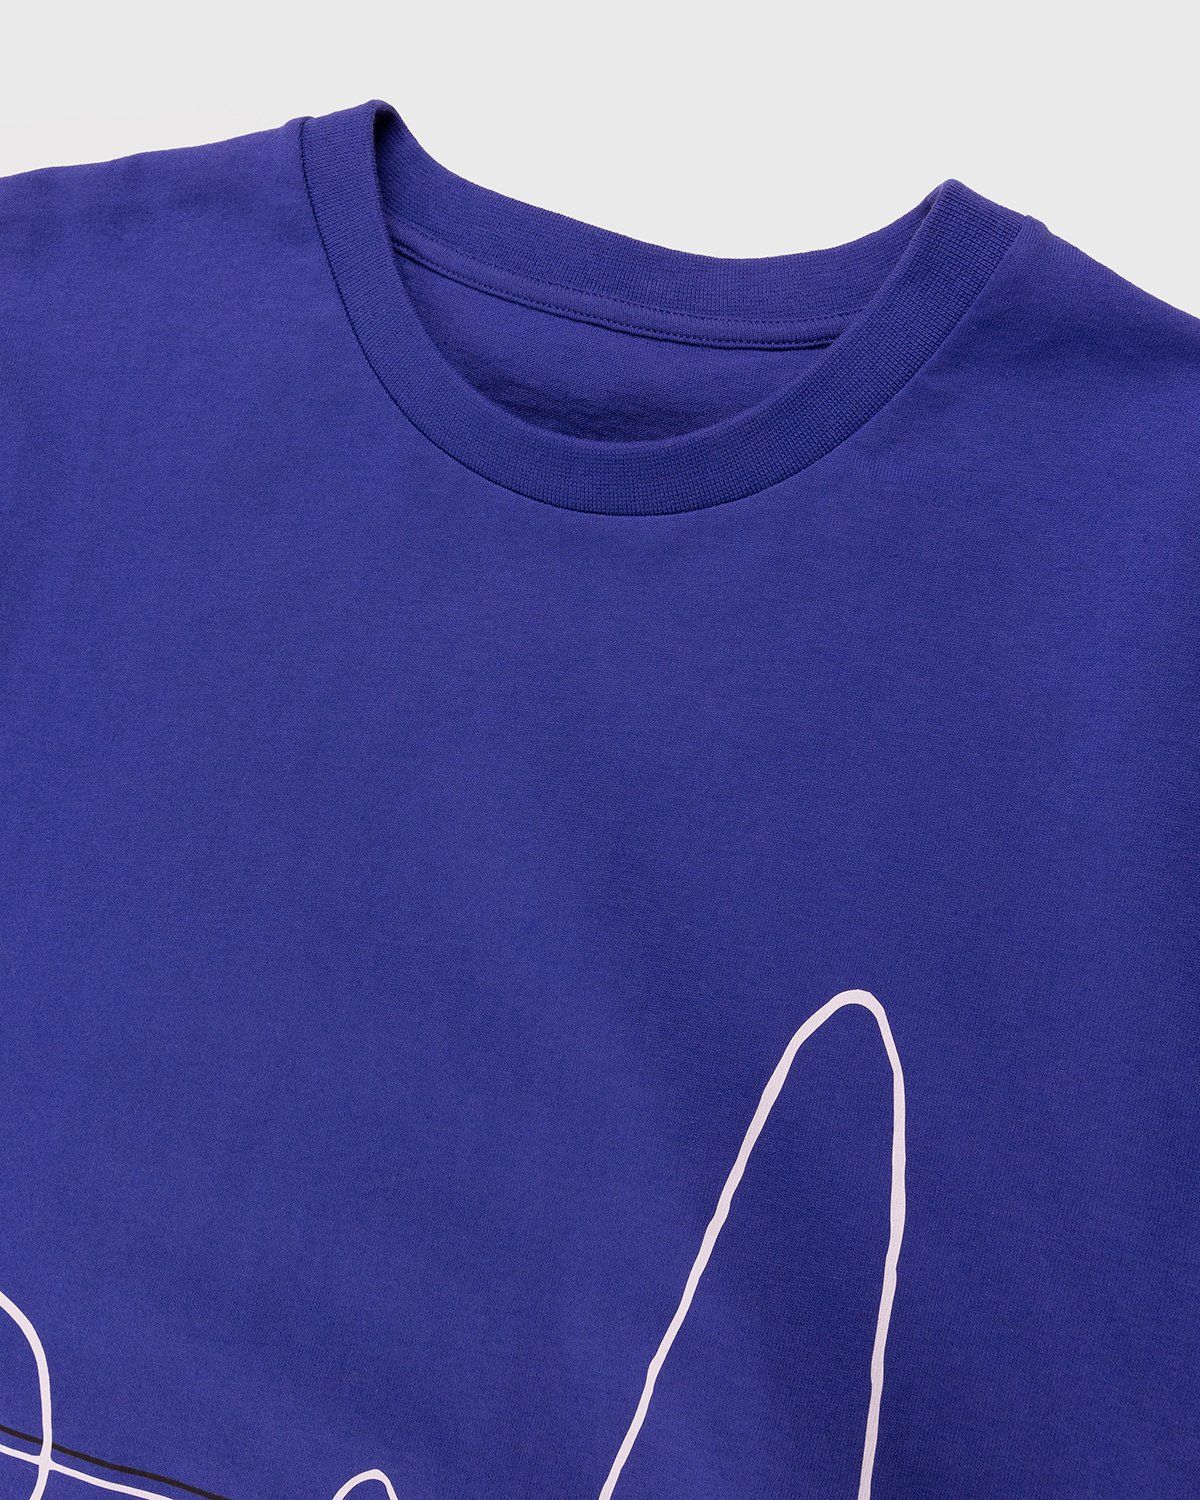 Lemaire – Printed Cotton T-Shirt Cobalt Blue - Image 4